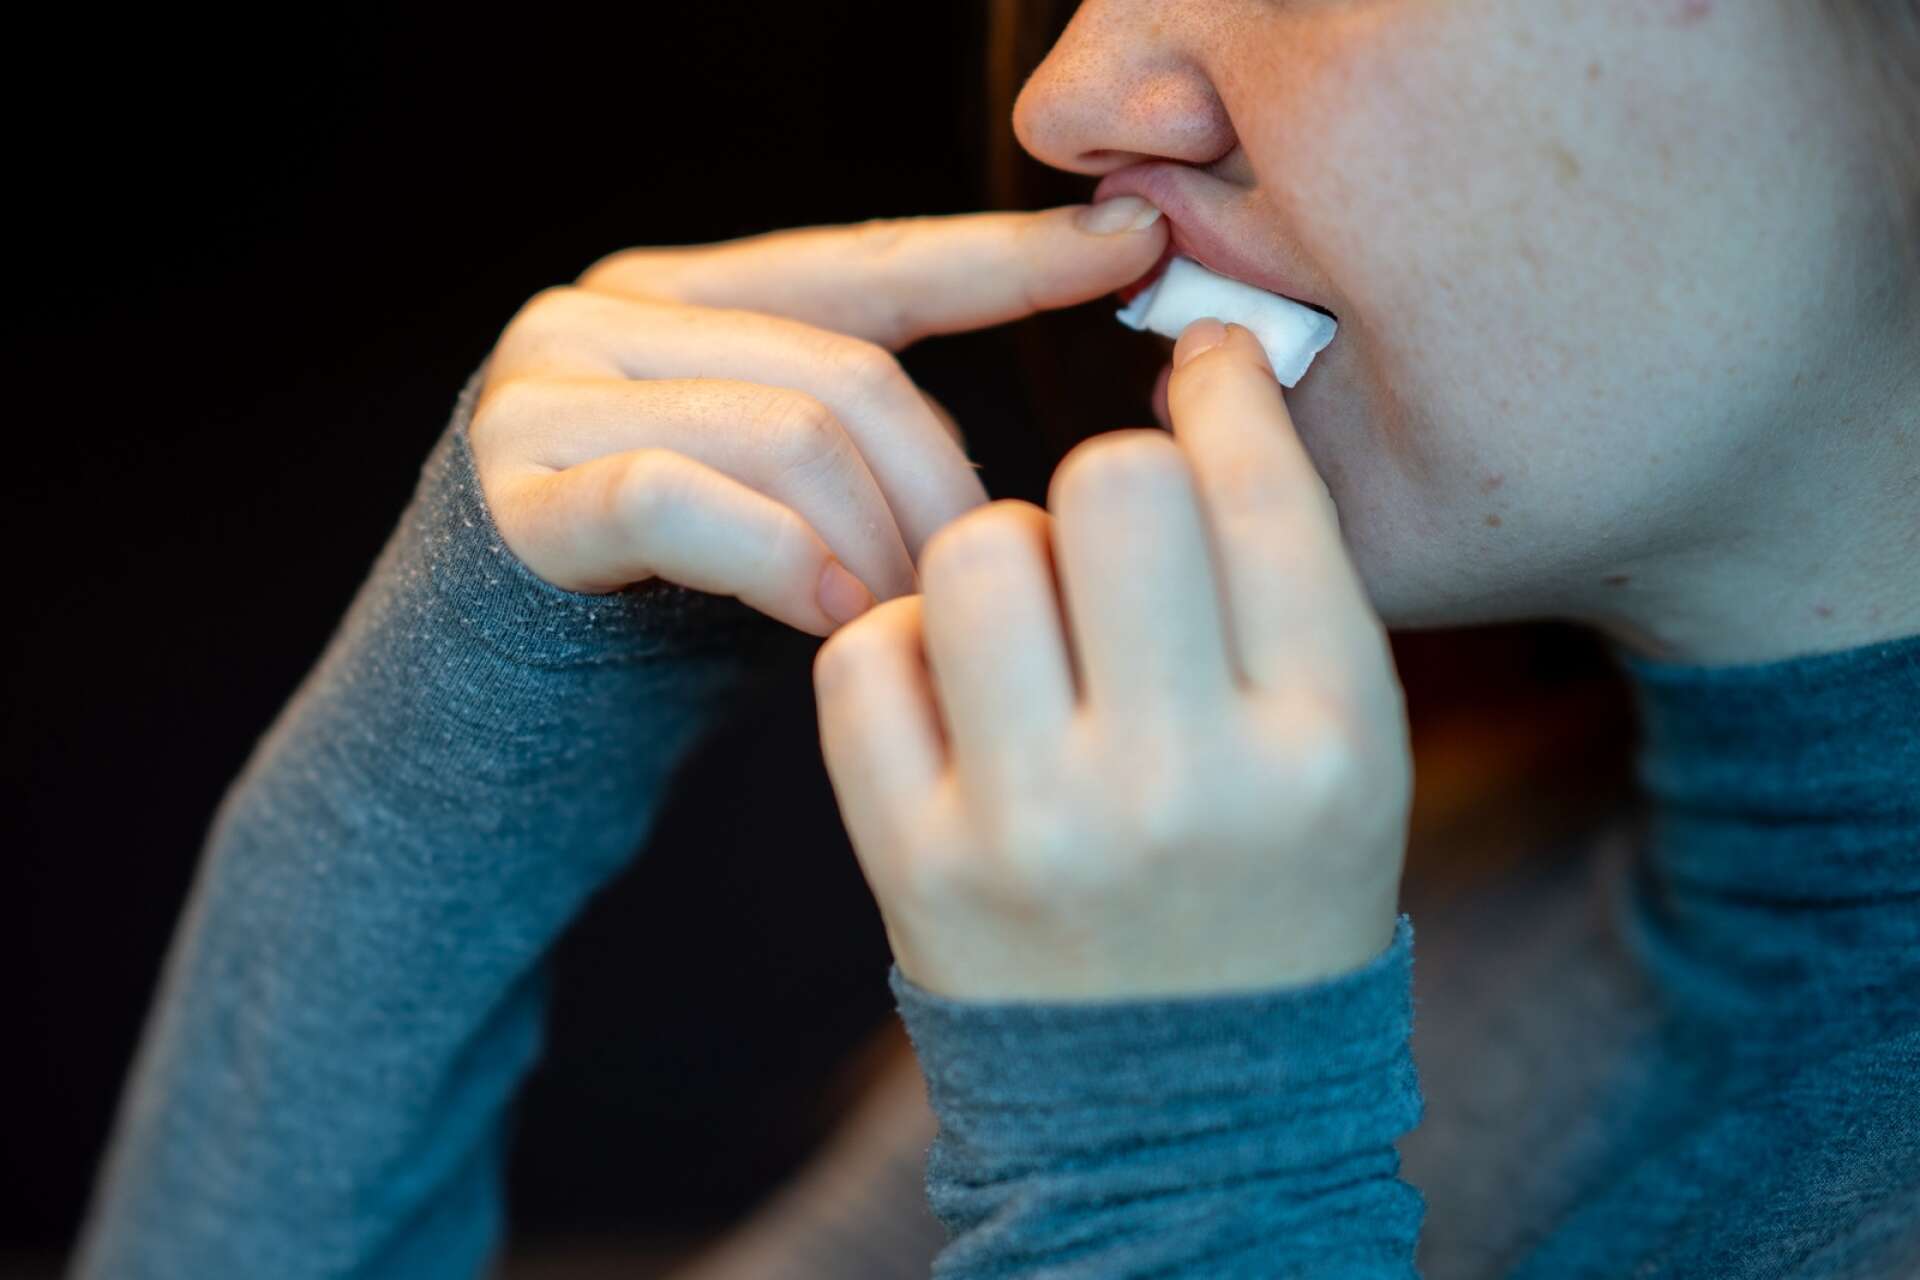 Att fler väljer snus framför cigaretter är bra för folkhälsan, menar debattören.